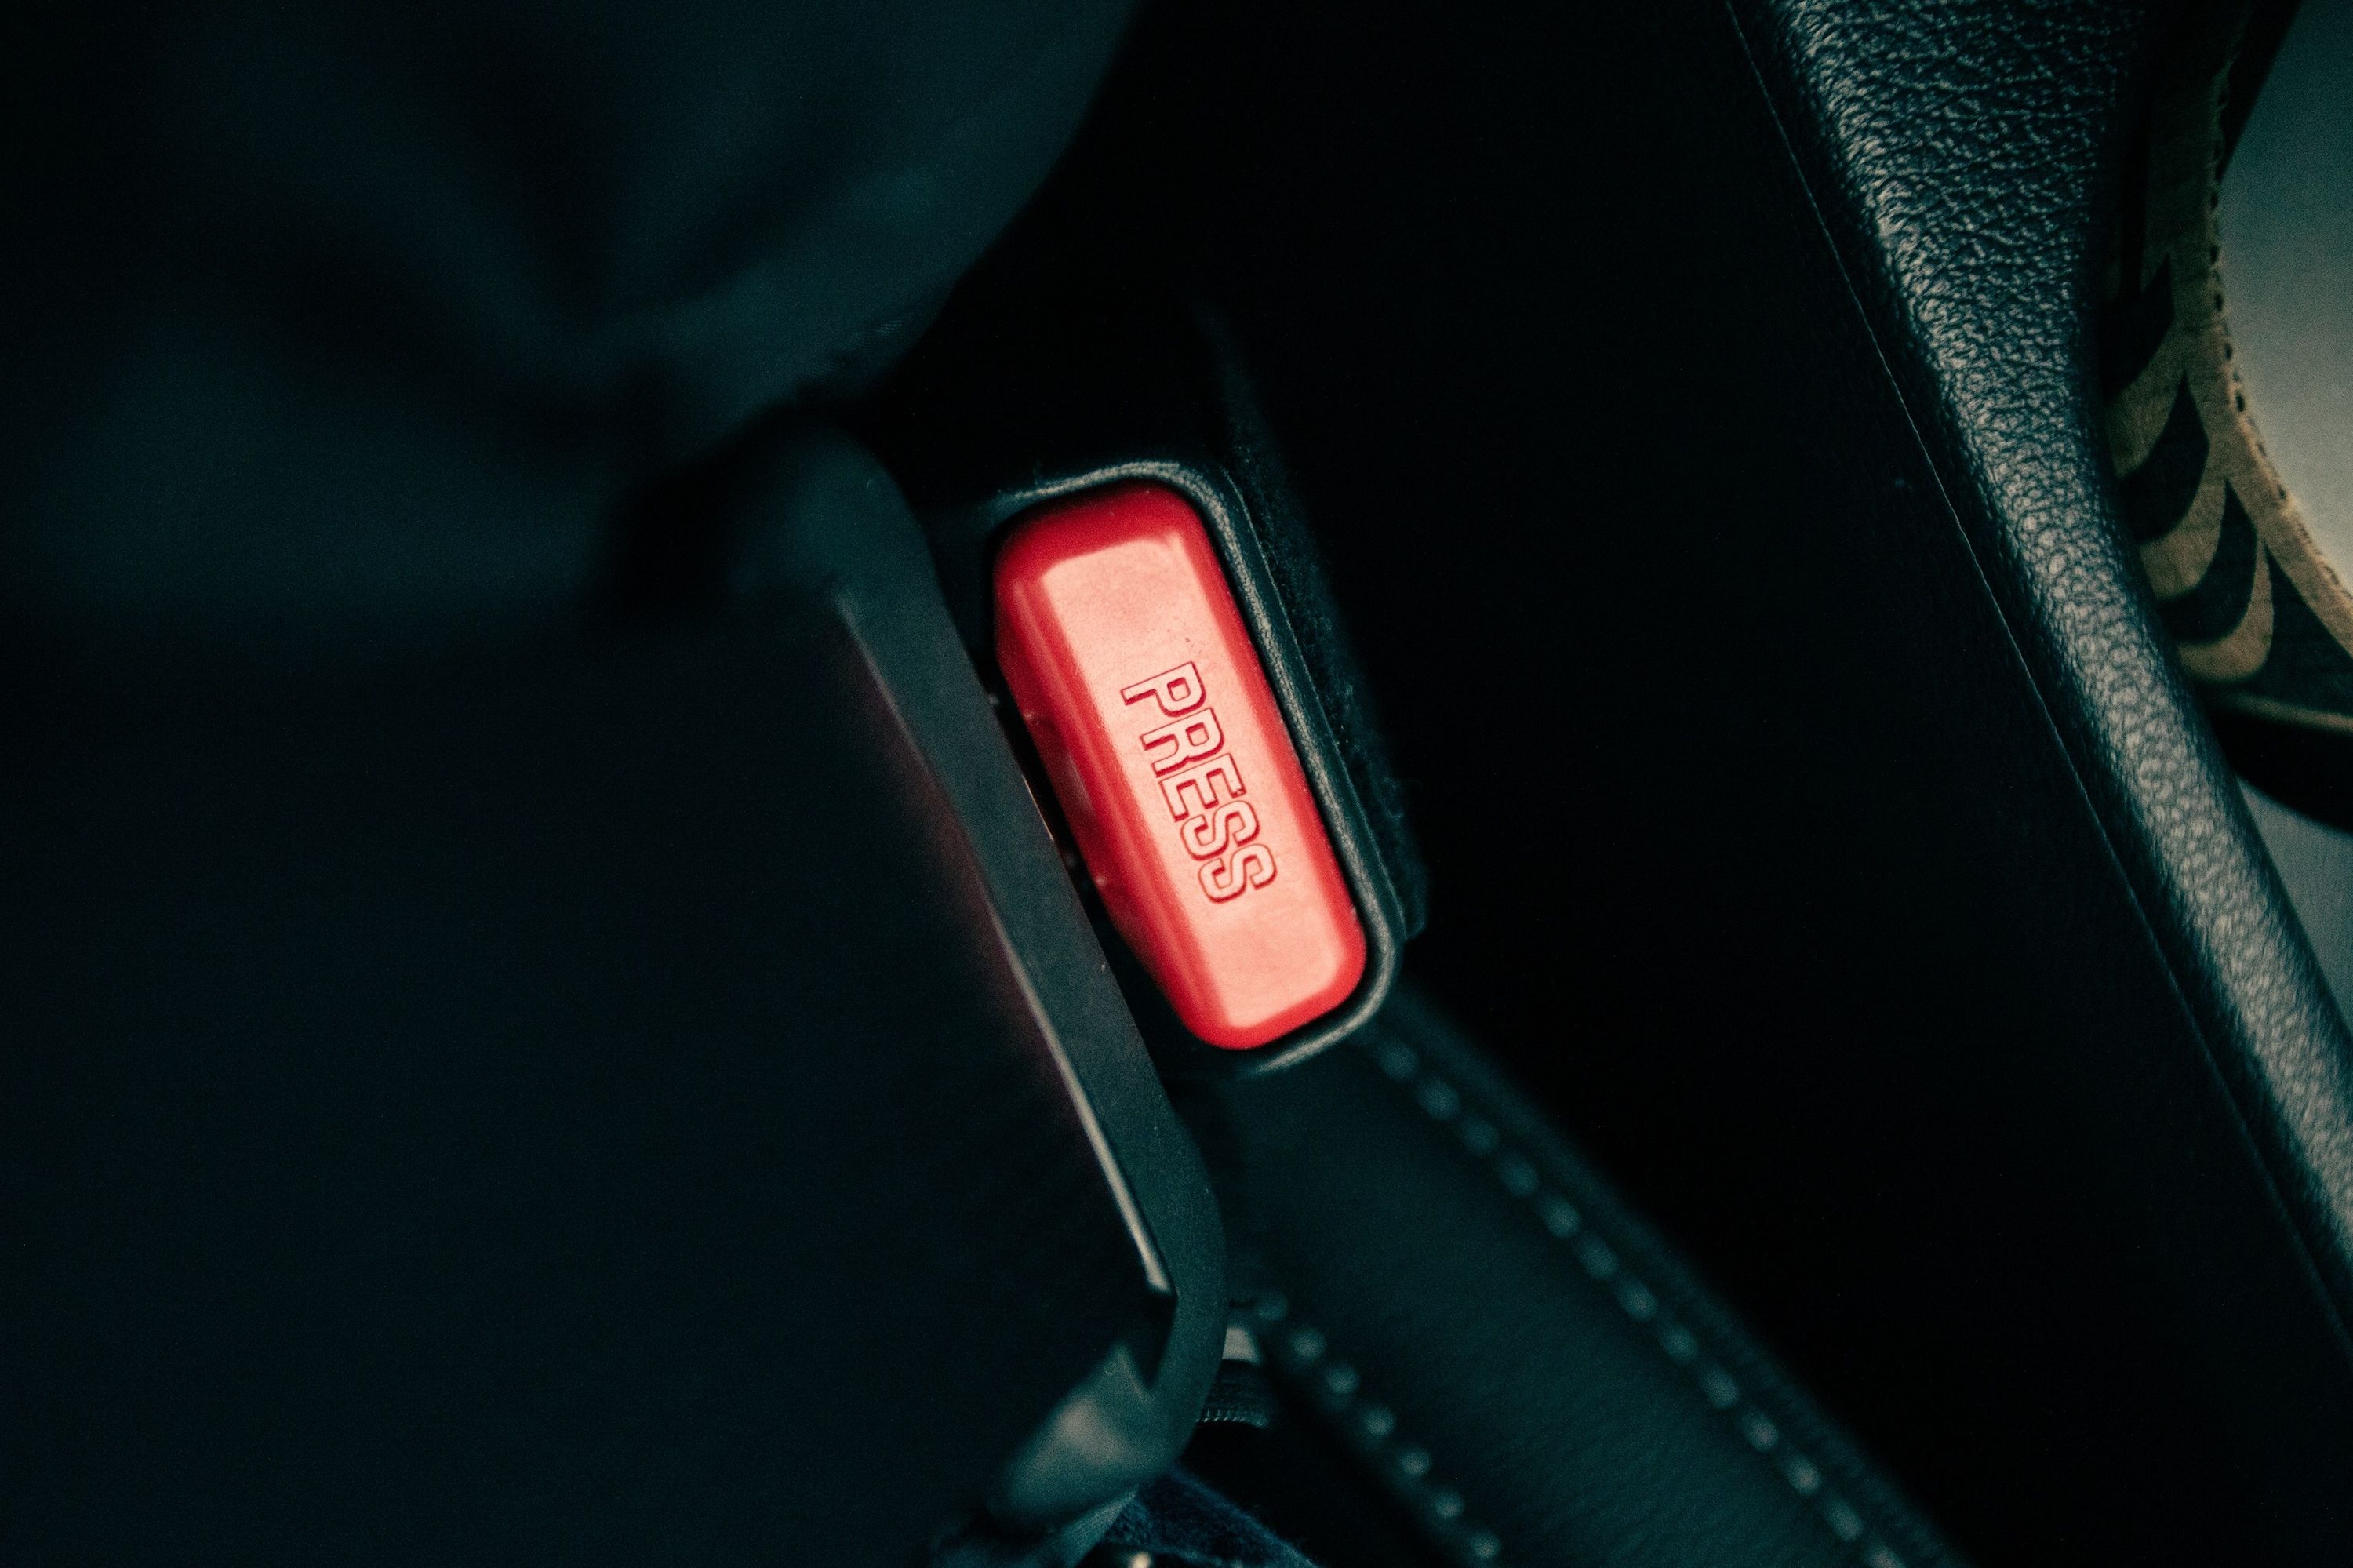 Toyota Sienna Seat Belt Extender